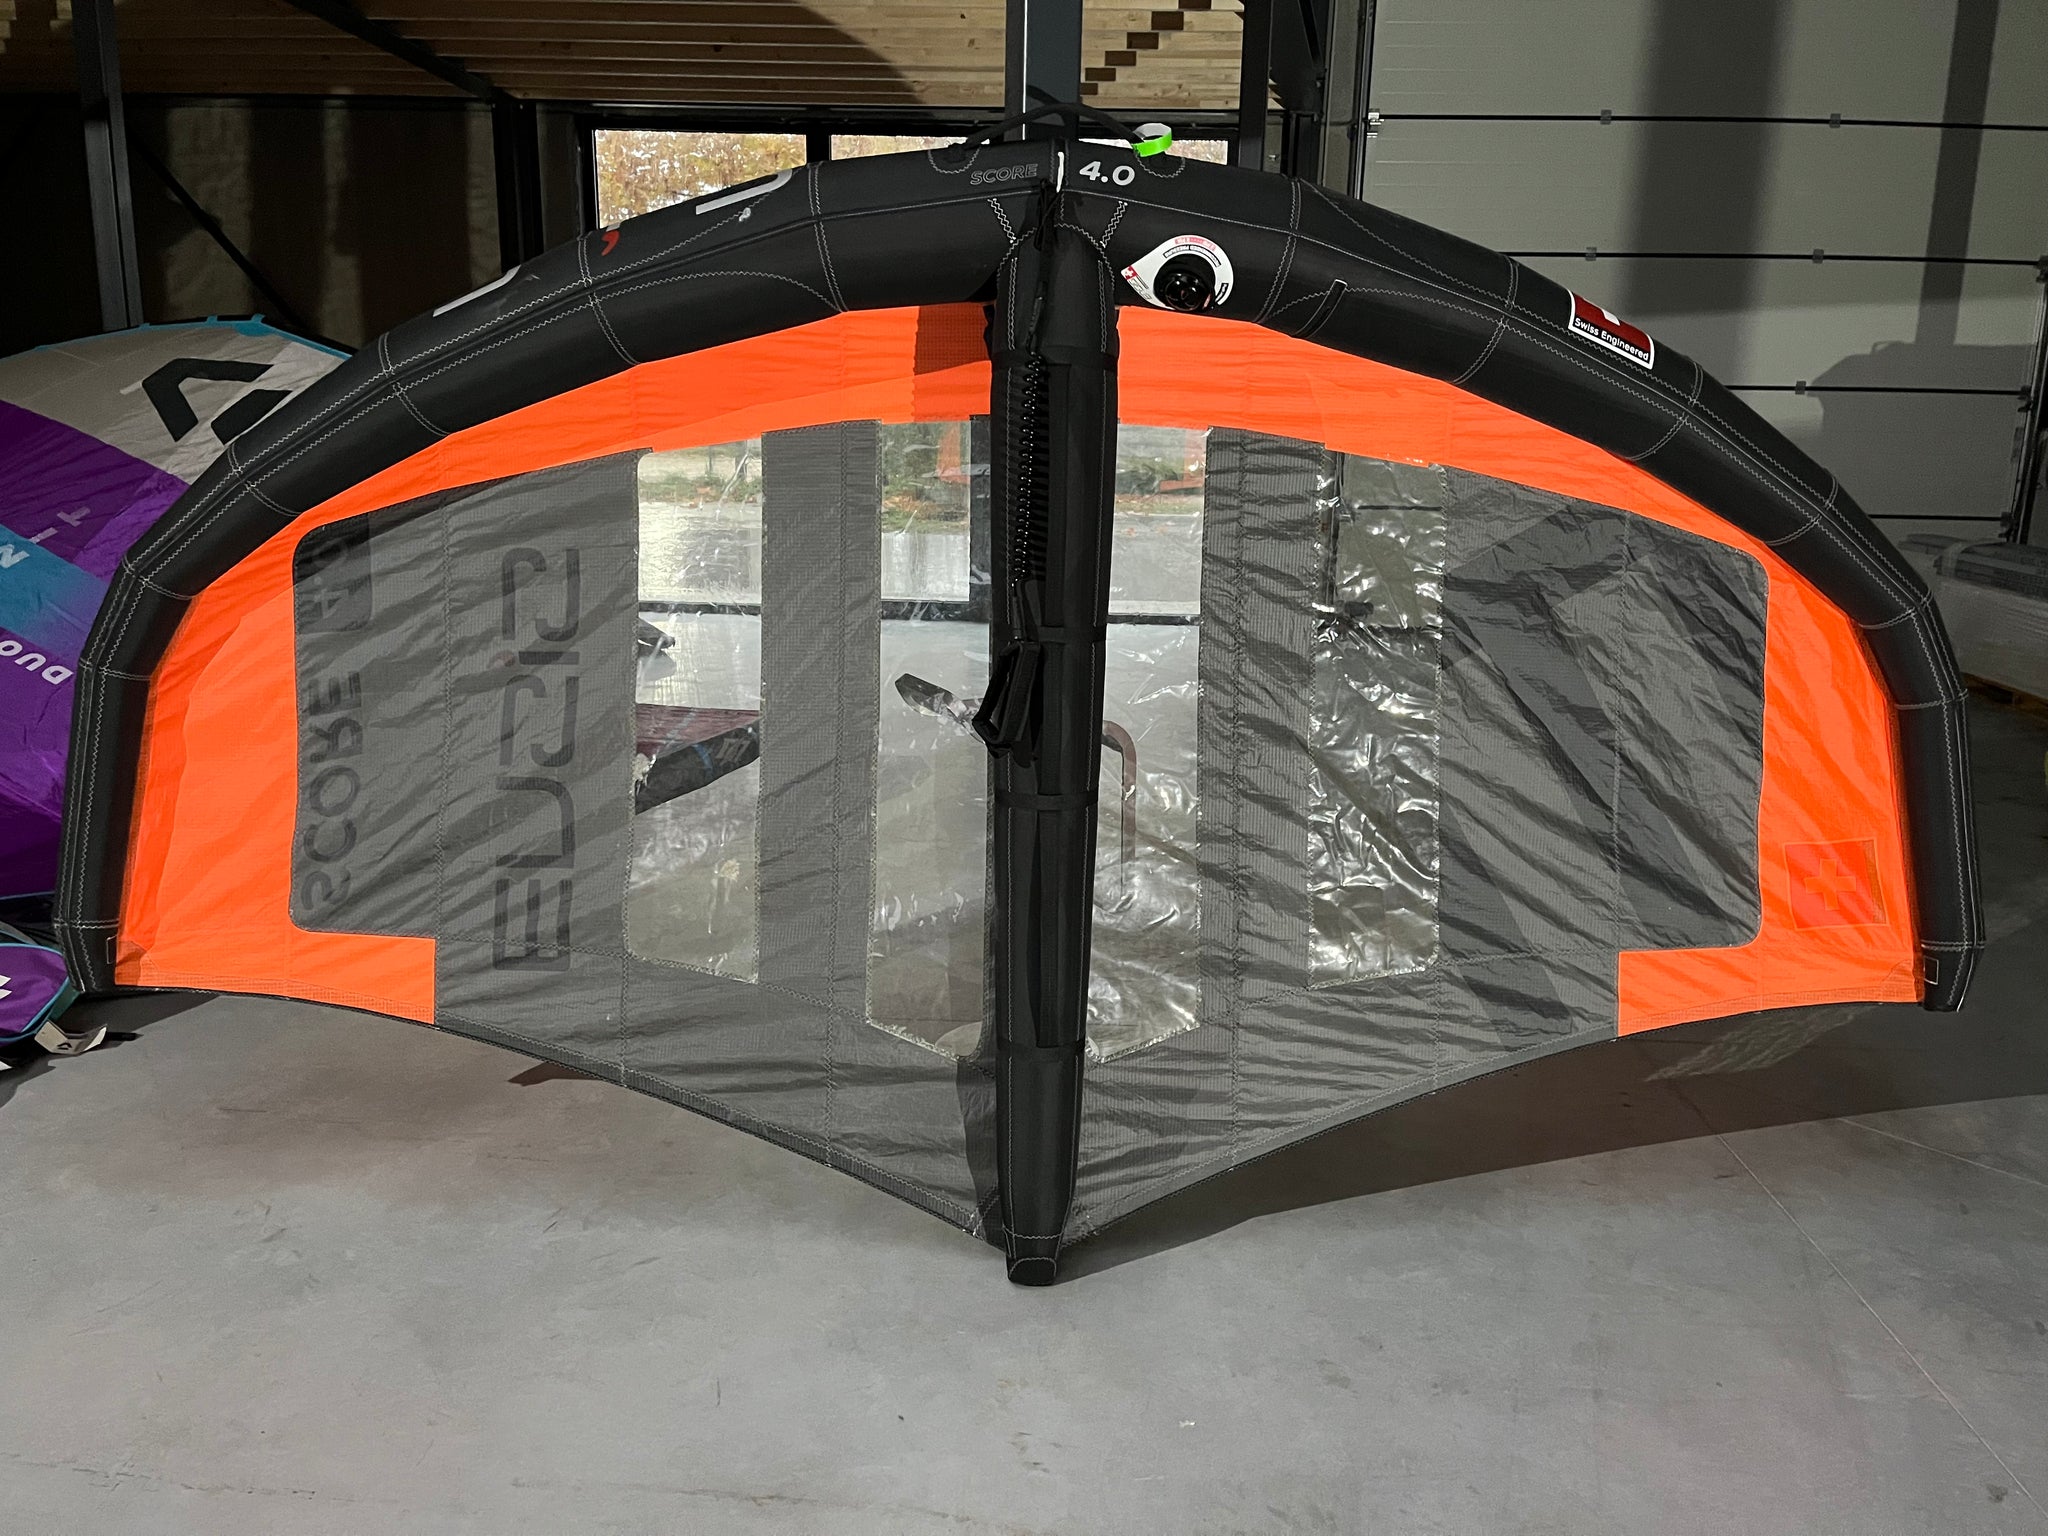 Demo 2022 ENSIS Wing SCORE - 4m (no bag)